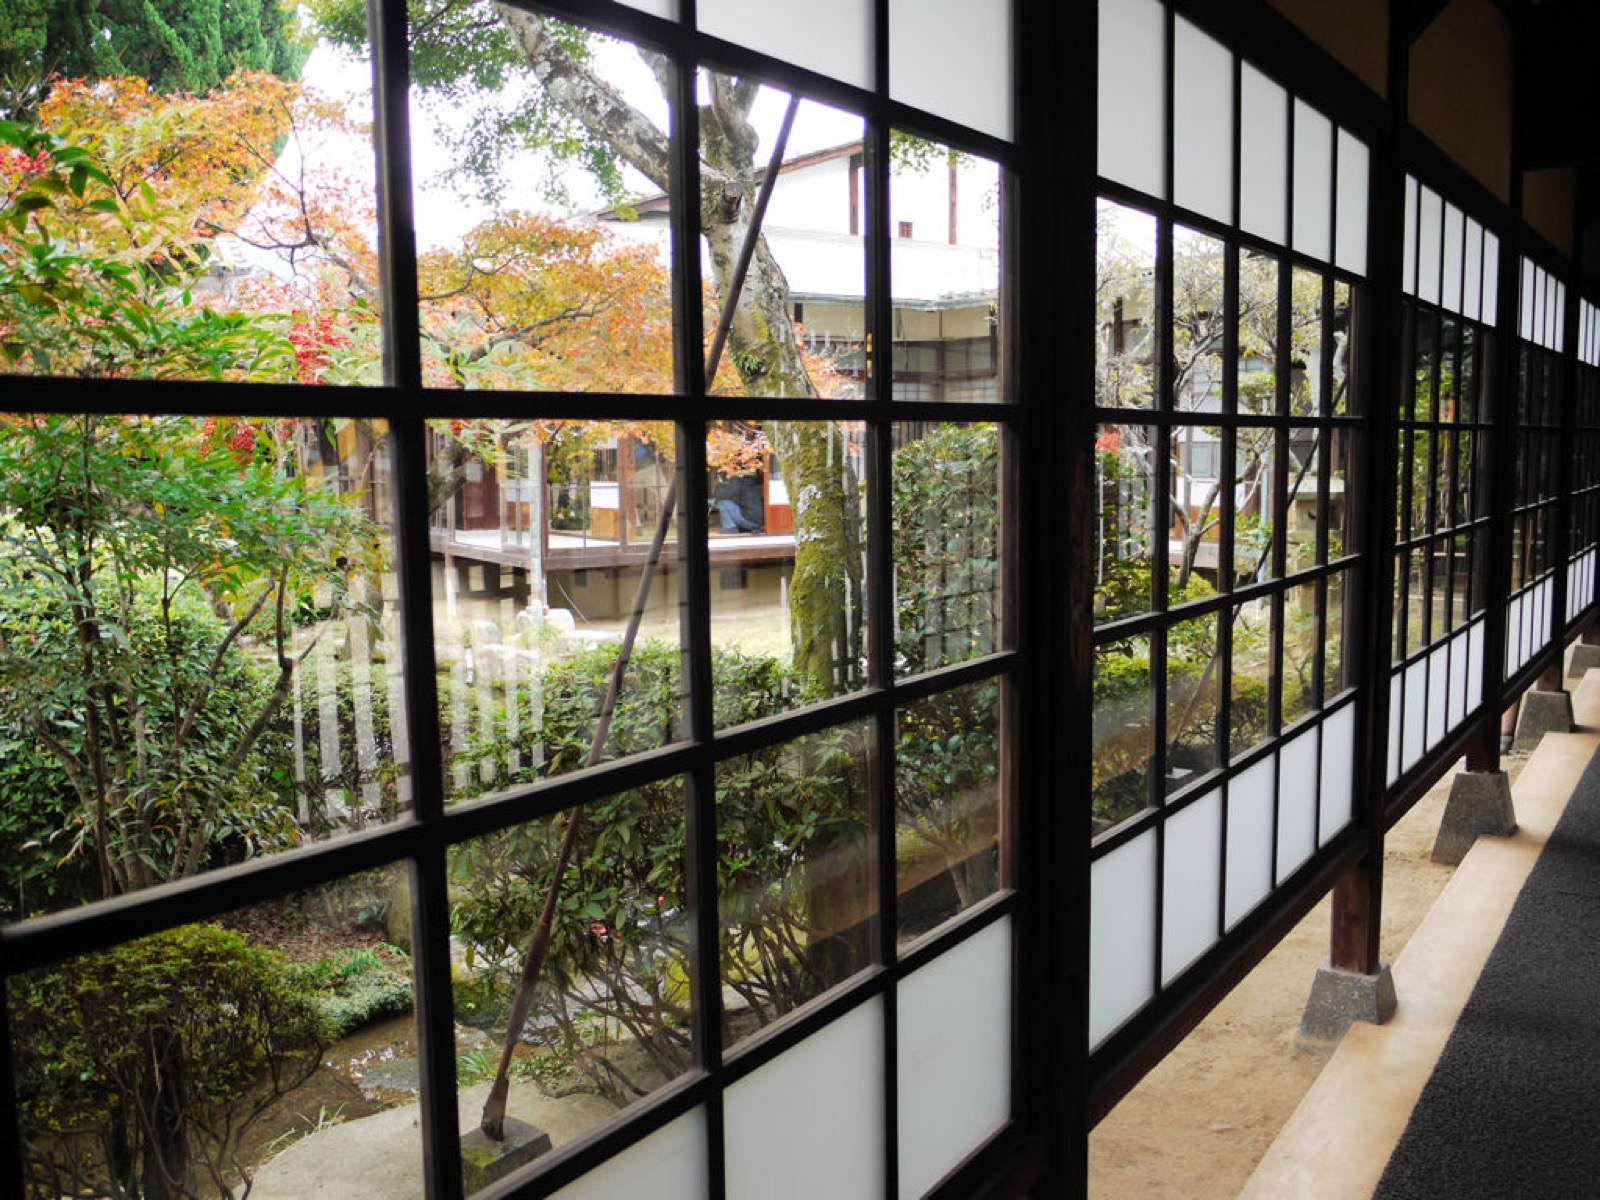 Photo of Miyajima History and Folklore Museum, Japan (Miyajima Museum of History and Folklore 宮島歴史民俗資料館 by Urawa Zero)